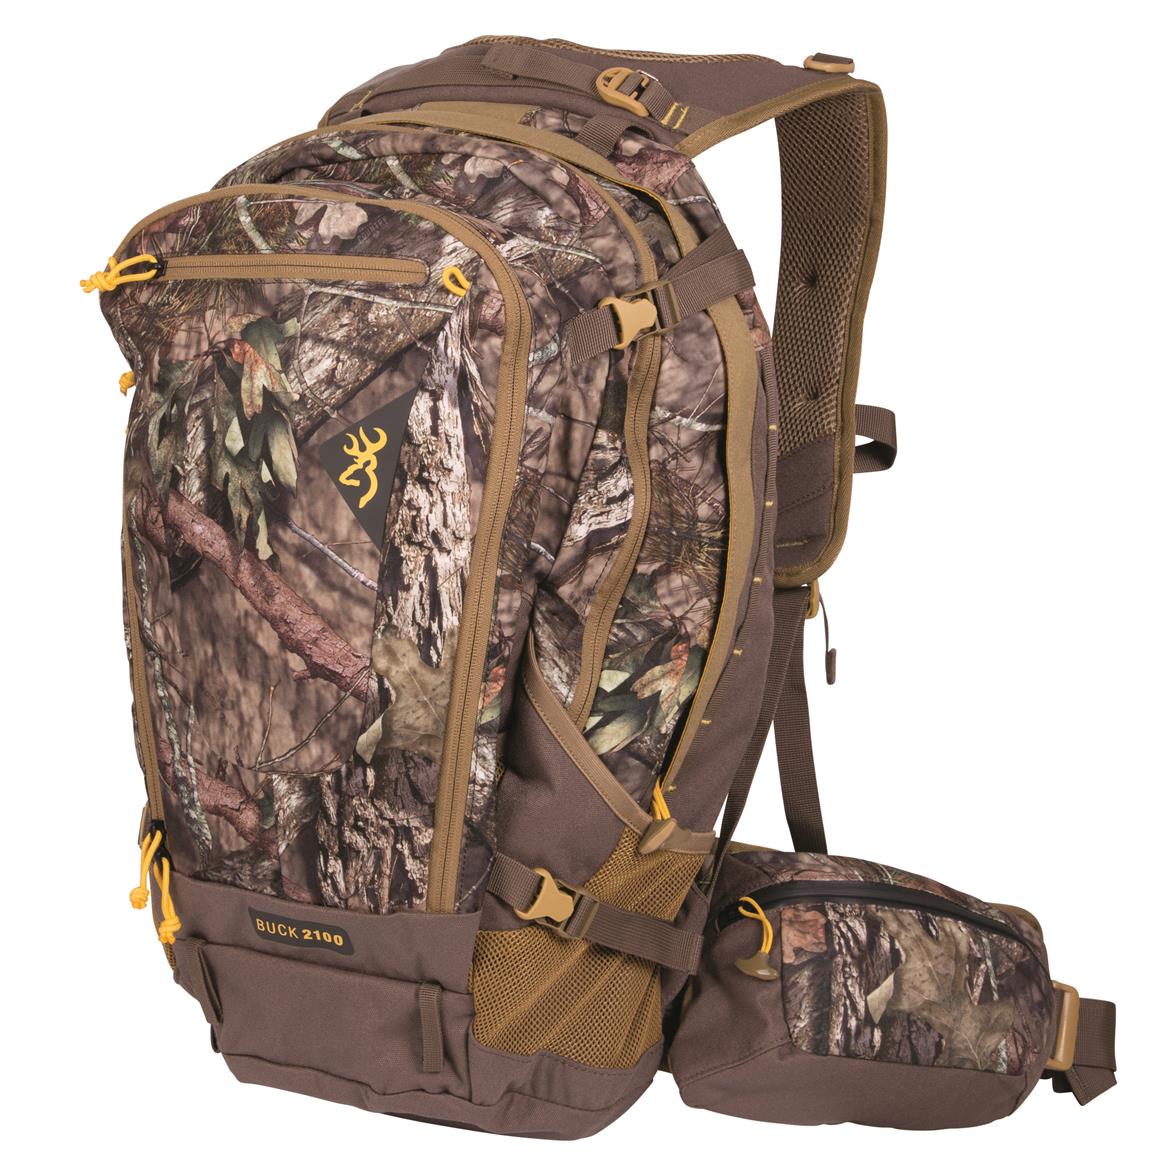 Browning Buck 2100 Camo Hunting Daypack - 680300, Hunting Backpacks at ...